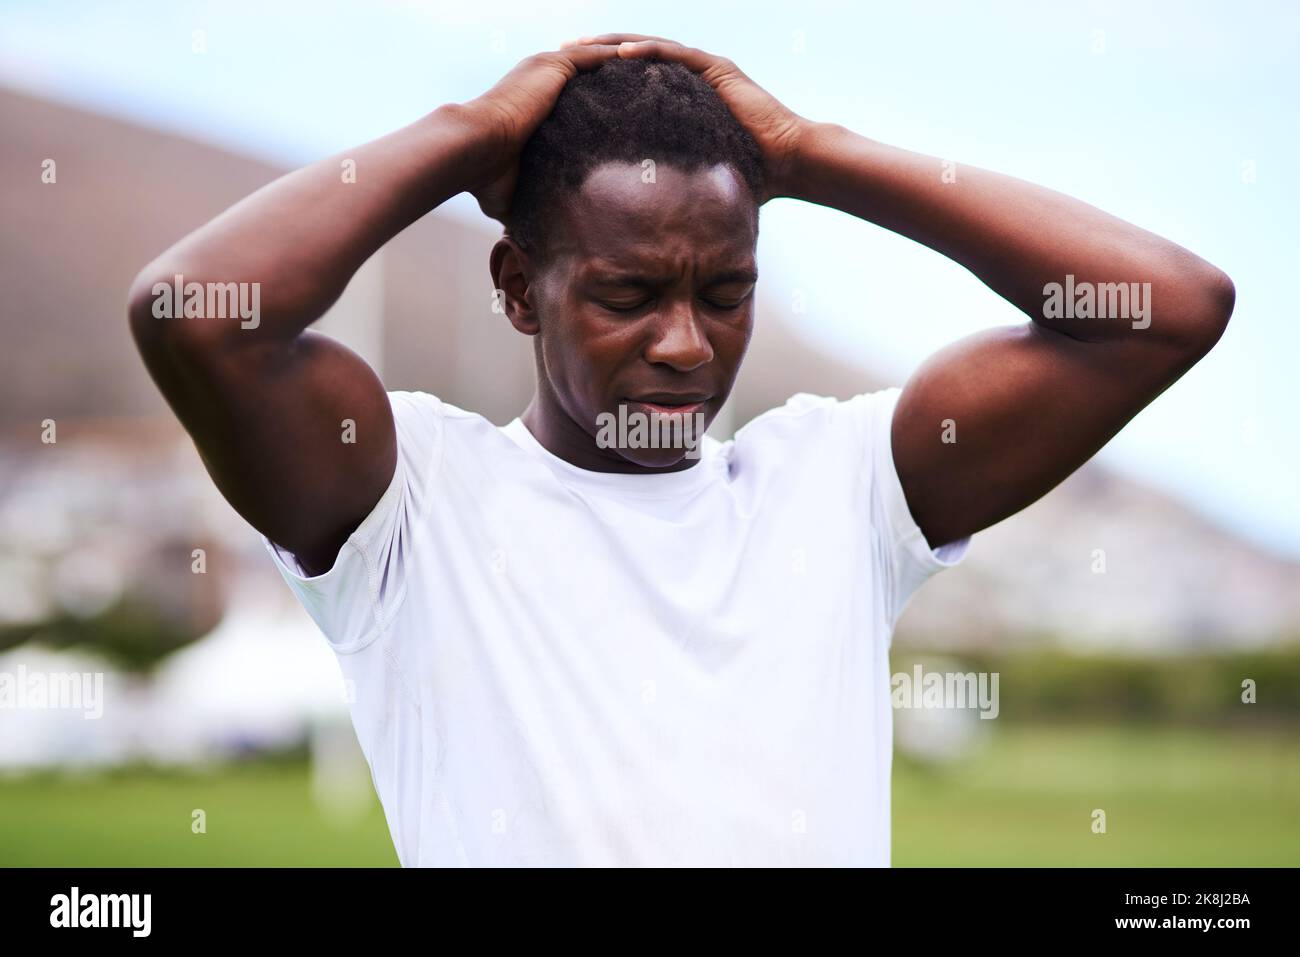 Il fallimento non è definitivo. Un giovane che guarda turbato mentre gioca una partita di rugby. Foto Stock